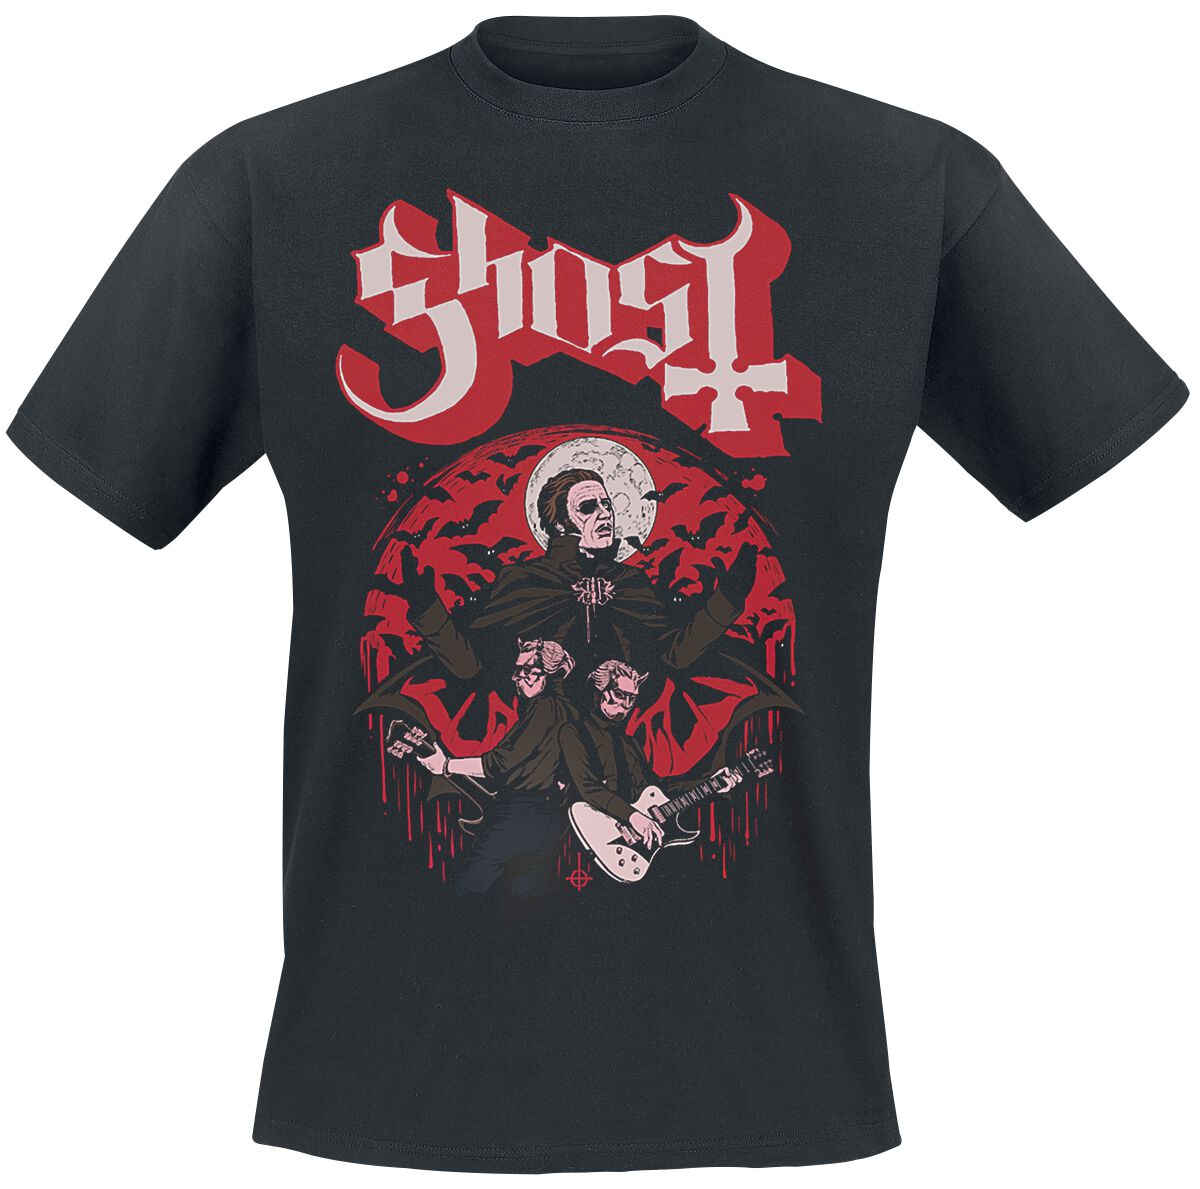 Ghost T-Shirt - Guitars - S bis 5XL - für Männer - Größe L - schwarz  - Lizenziertes Merchandise!